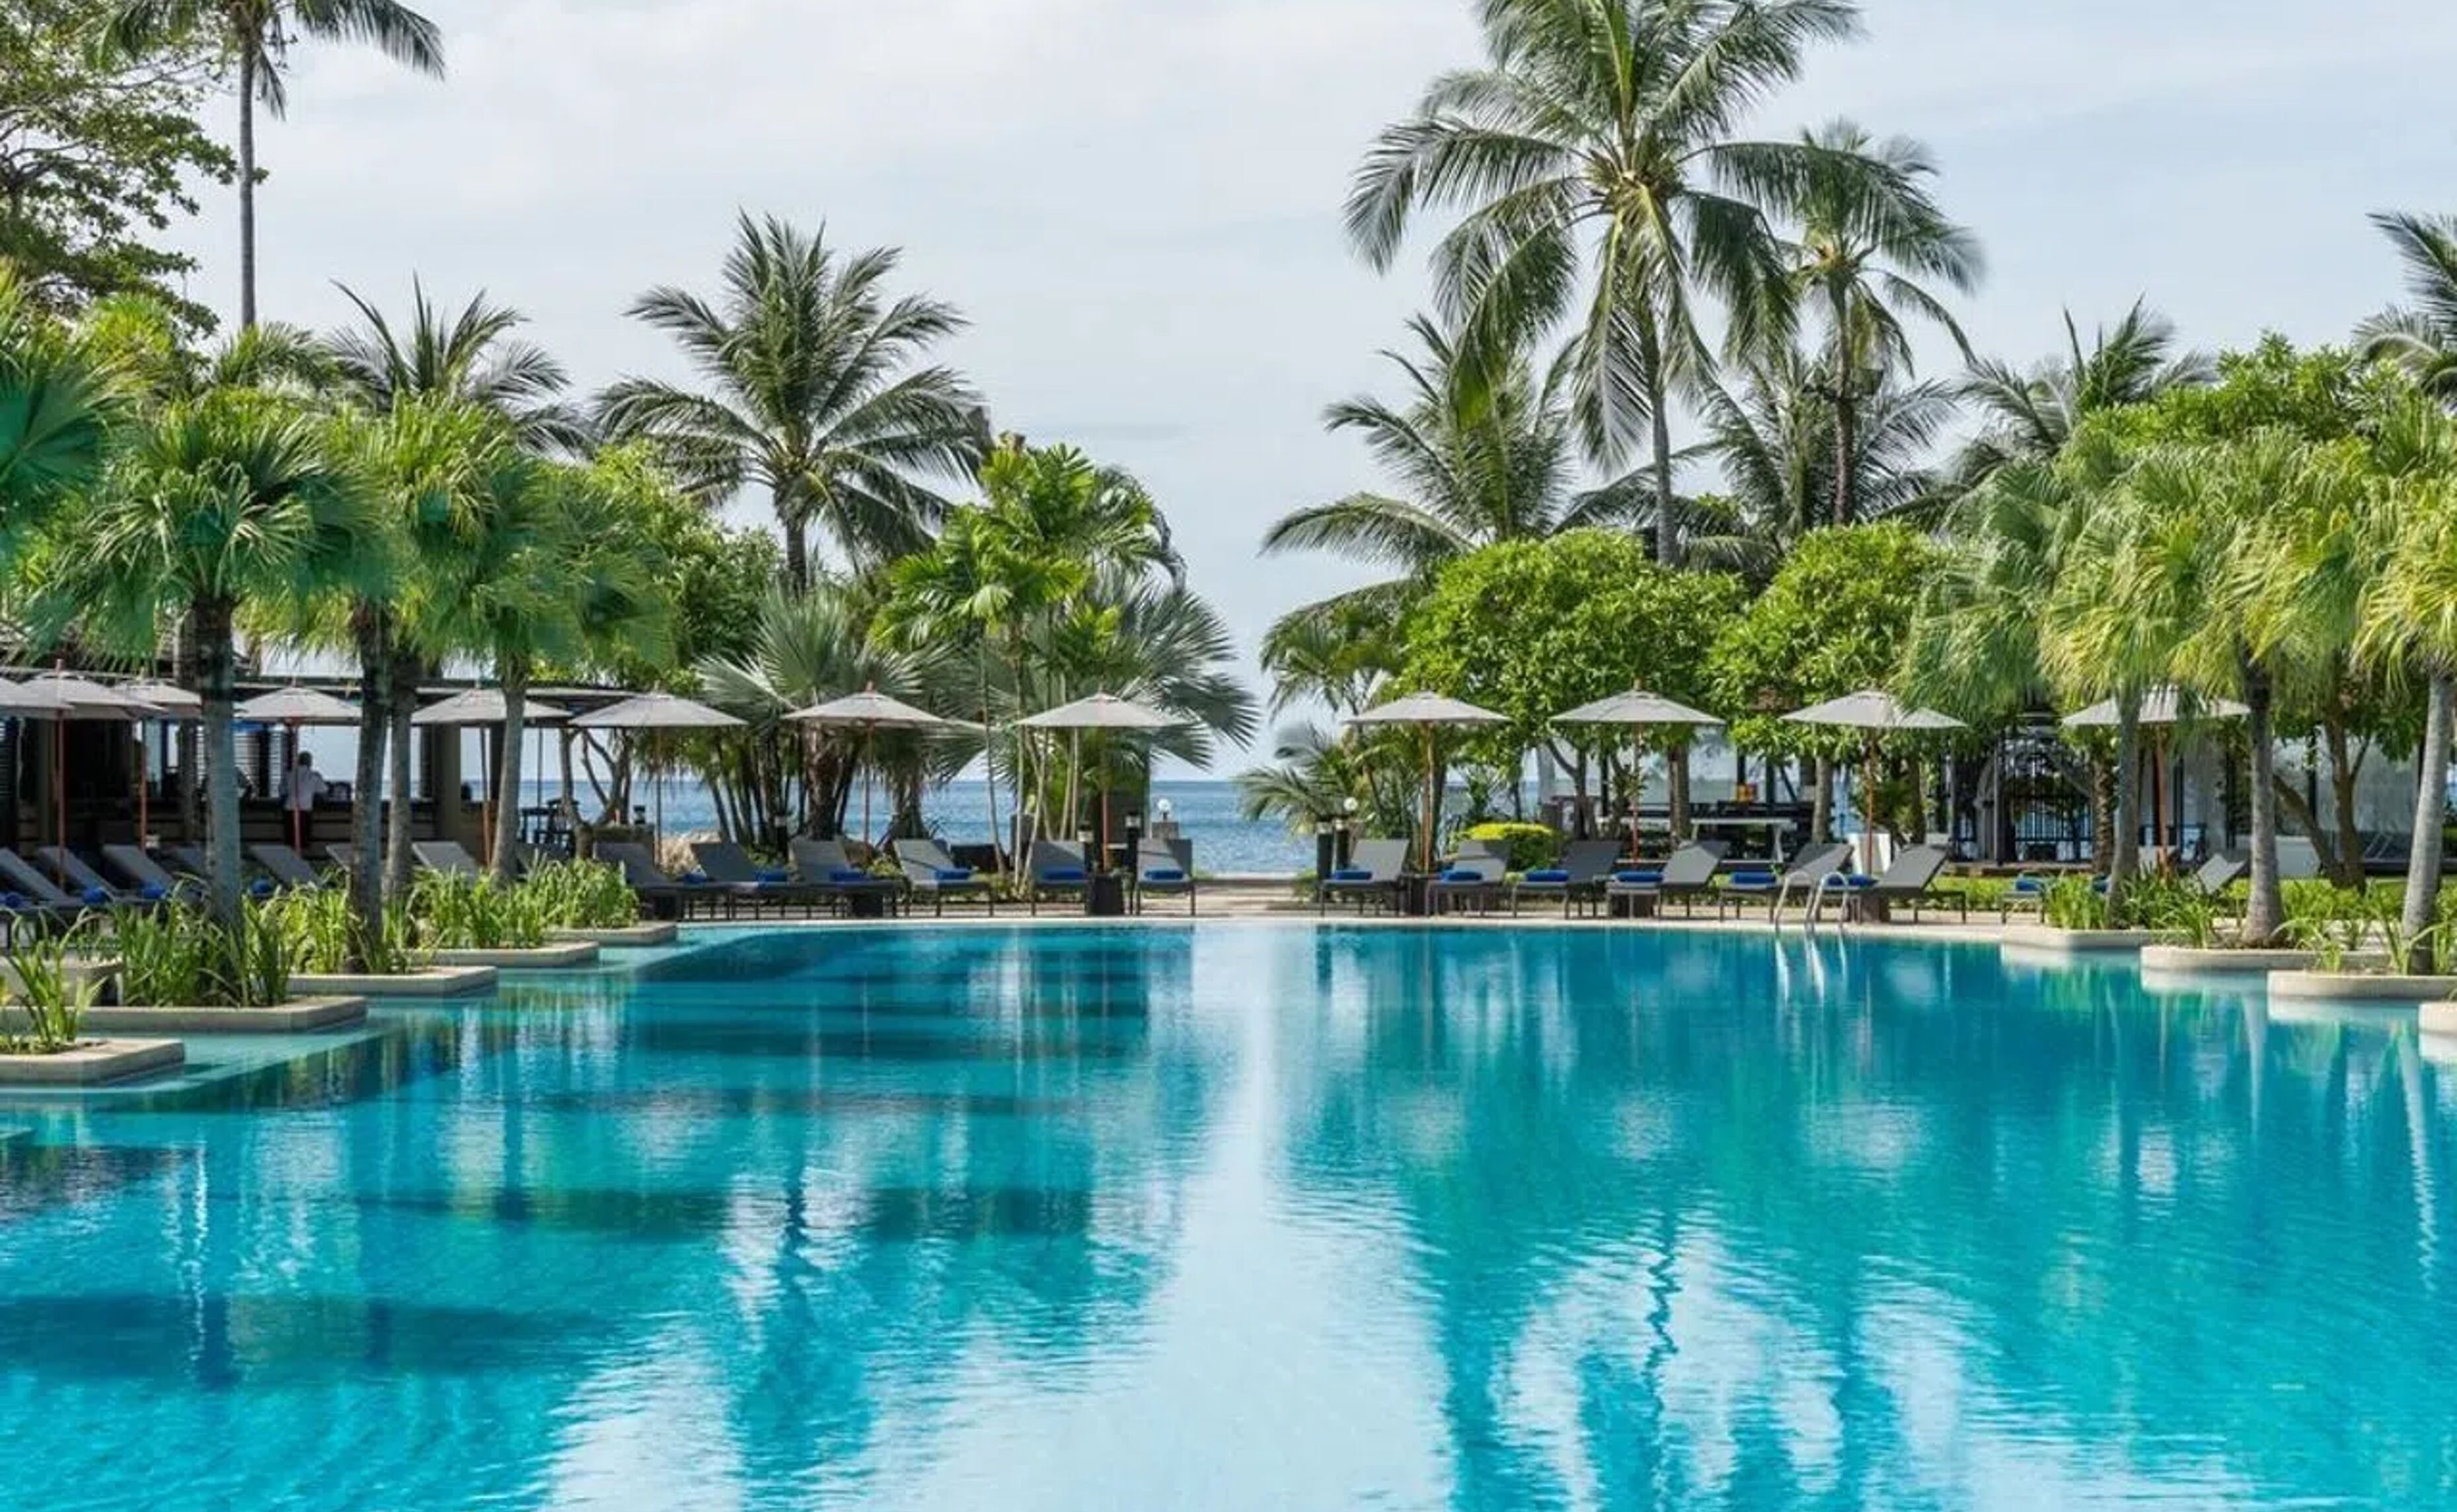 "Phuket Marriott Resort & Spa